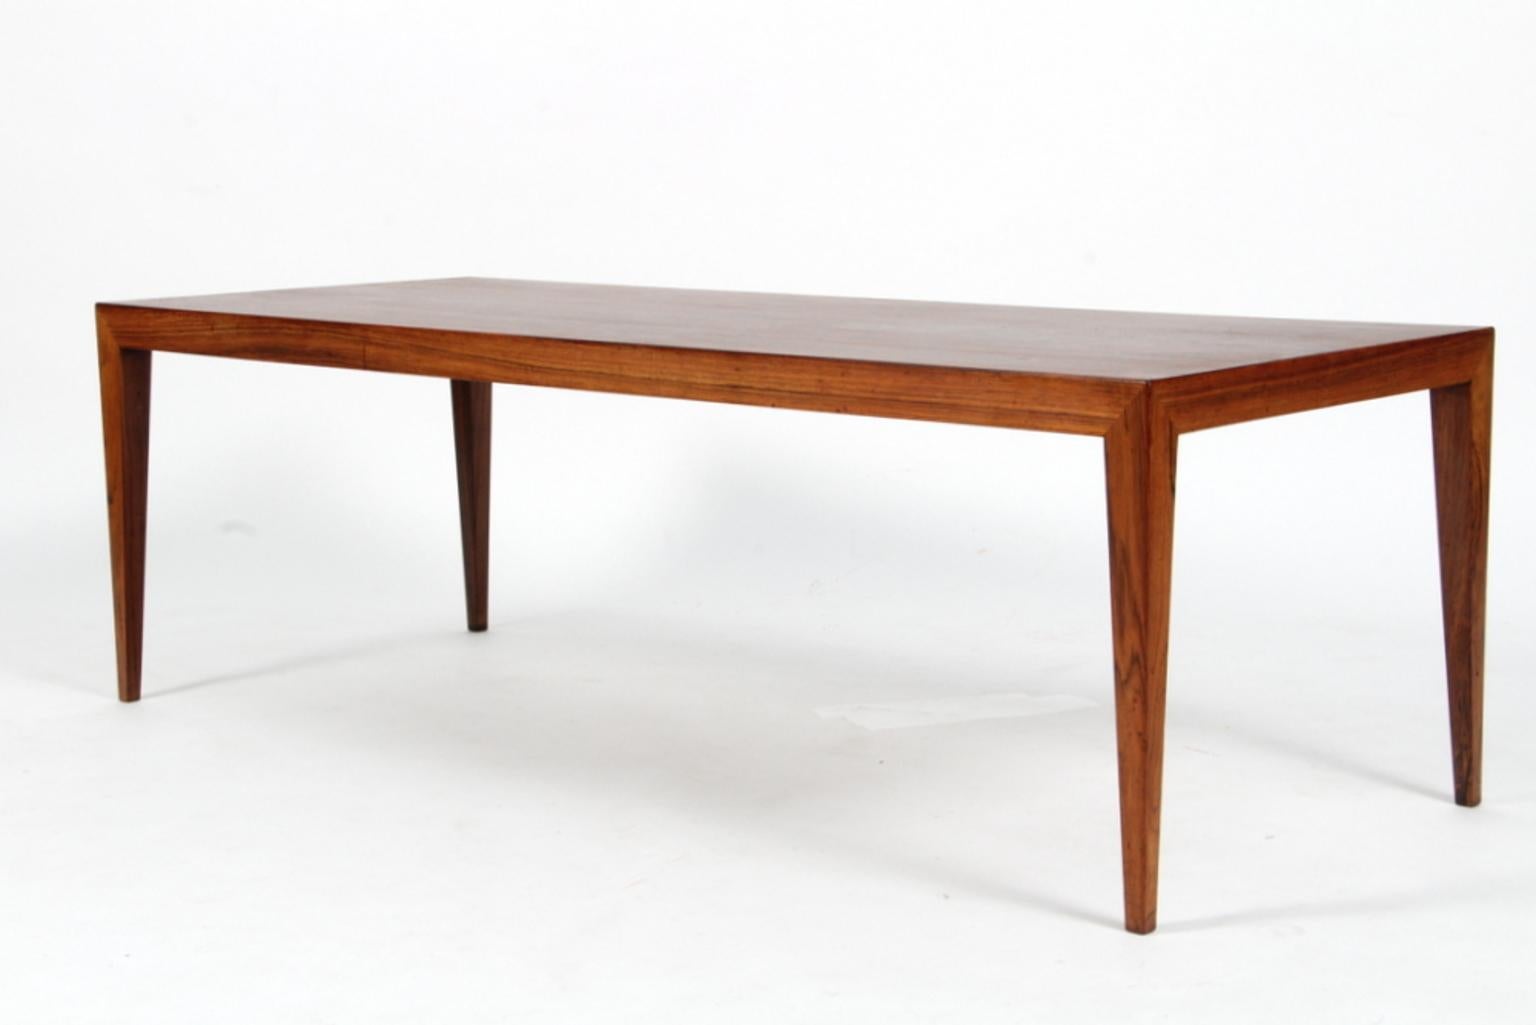 Severin Hansen sofa table.

Rosewood veneer.

Made by Haslev Møbler.